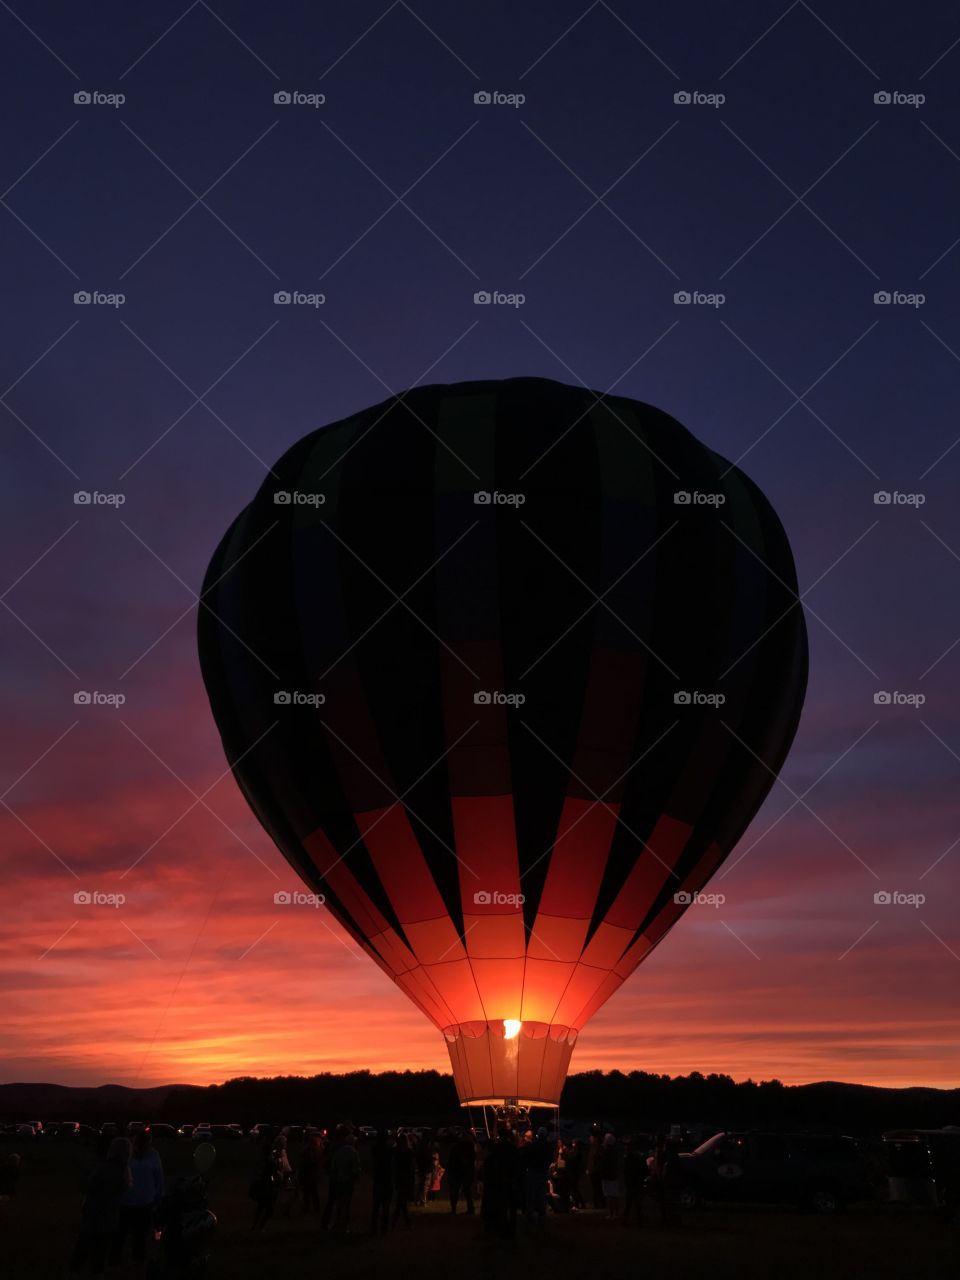 Hot air balloon festival at sunrise